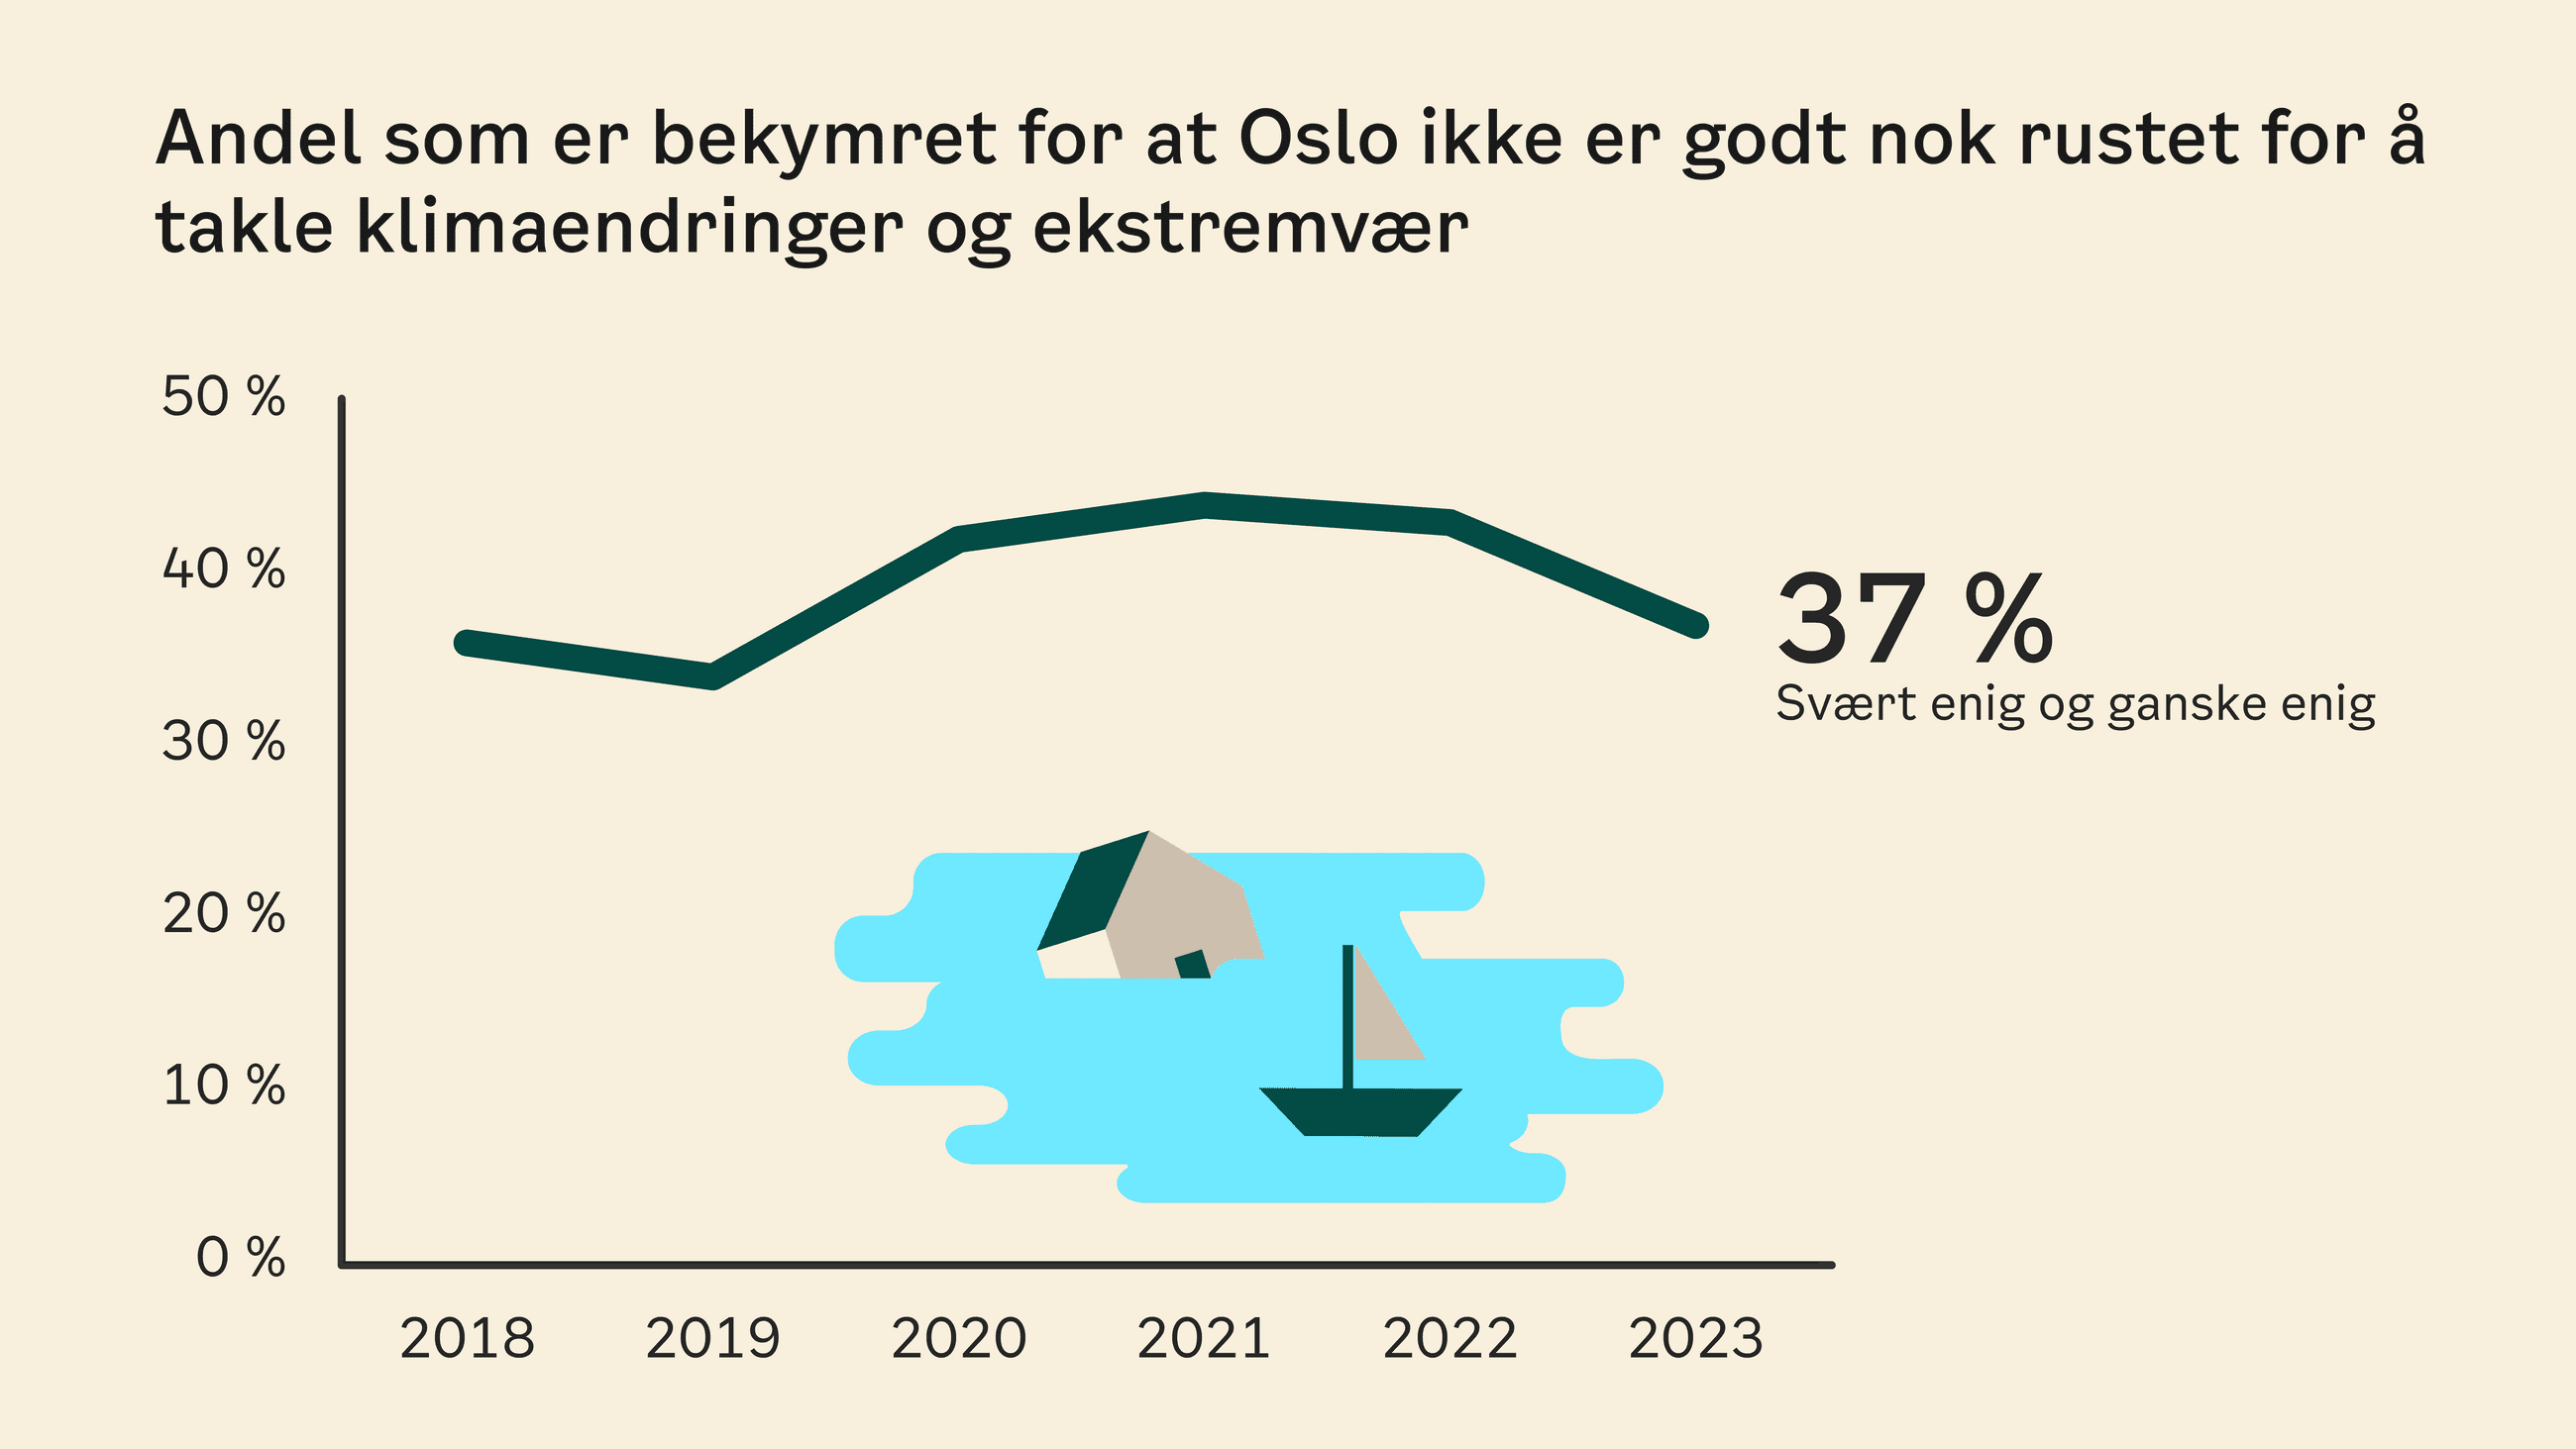 Graf som viser andelen som har svart at de er enige i bekymringen om at Oslo ikke er godt nok rustet til å takle klimaendringer og ekstremvær